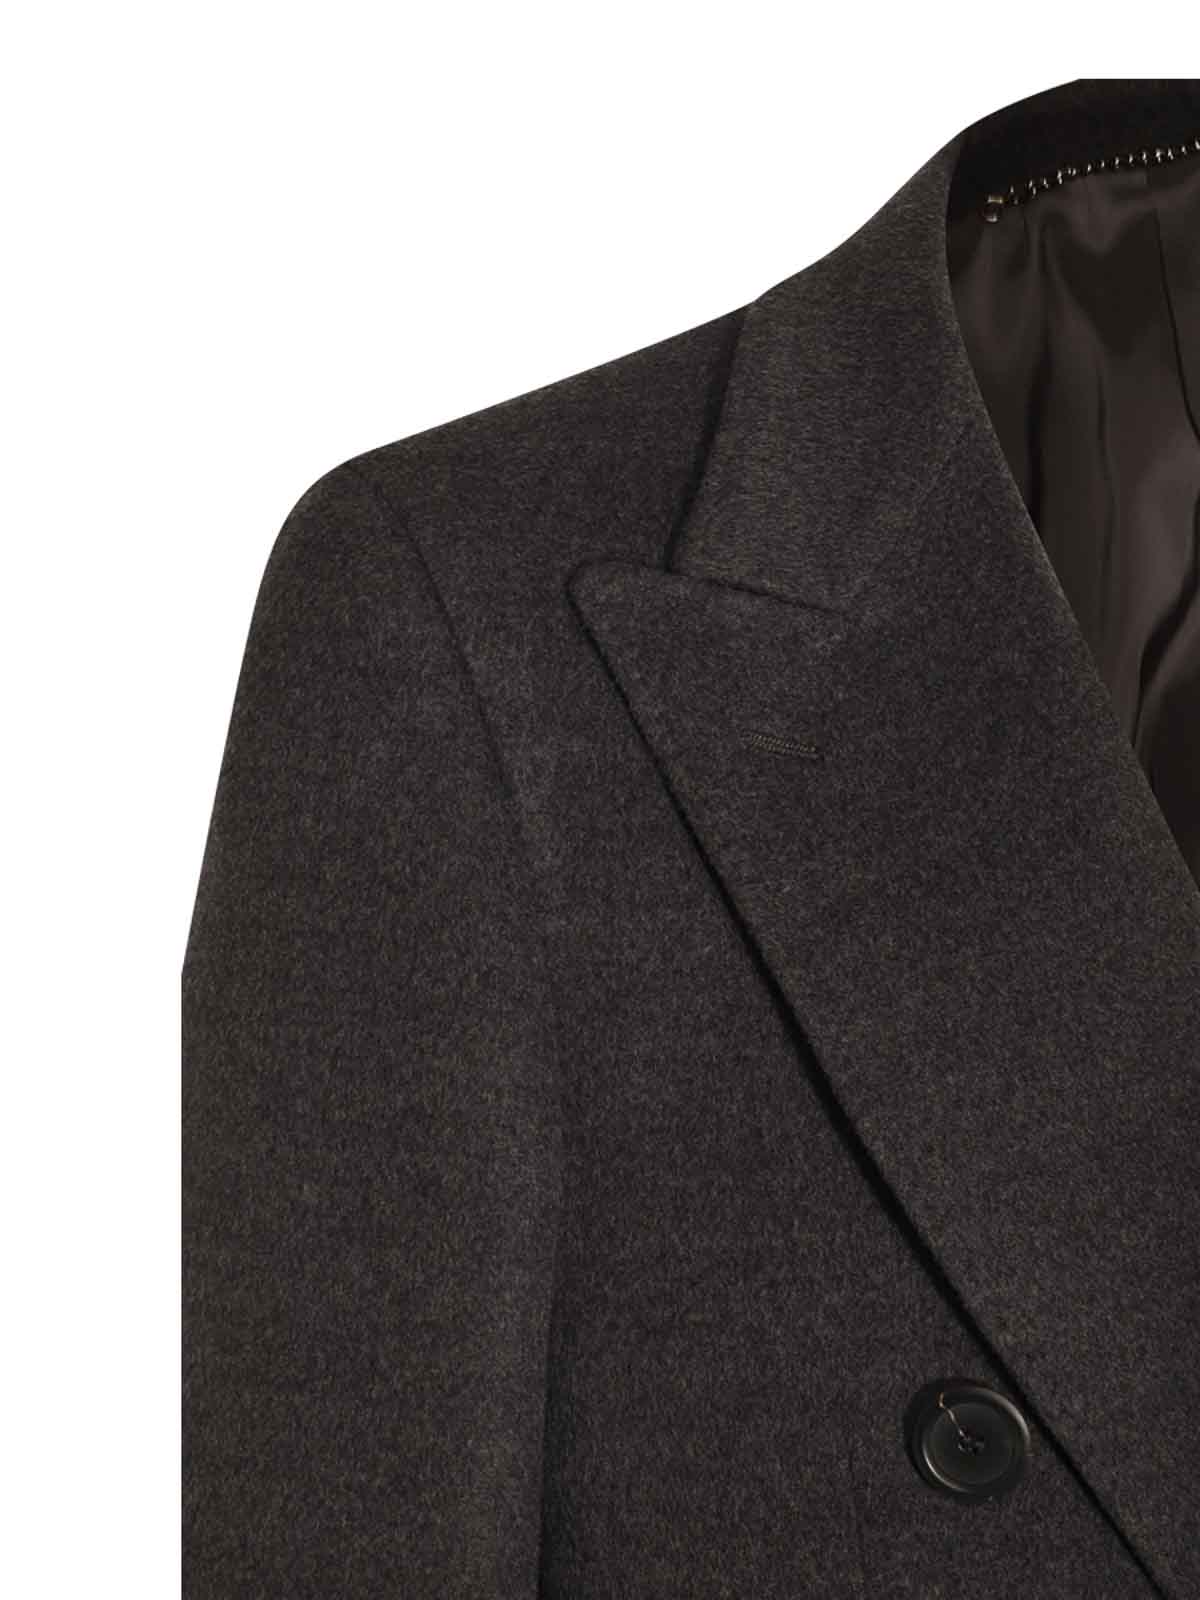 Short coats Canali - Grey wool coat - 50879FF04760111